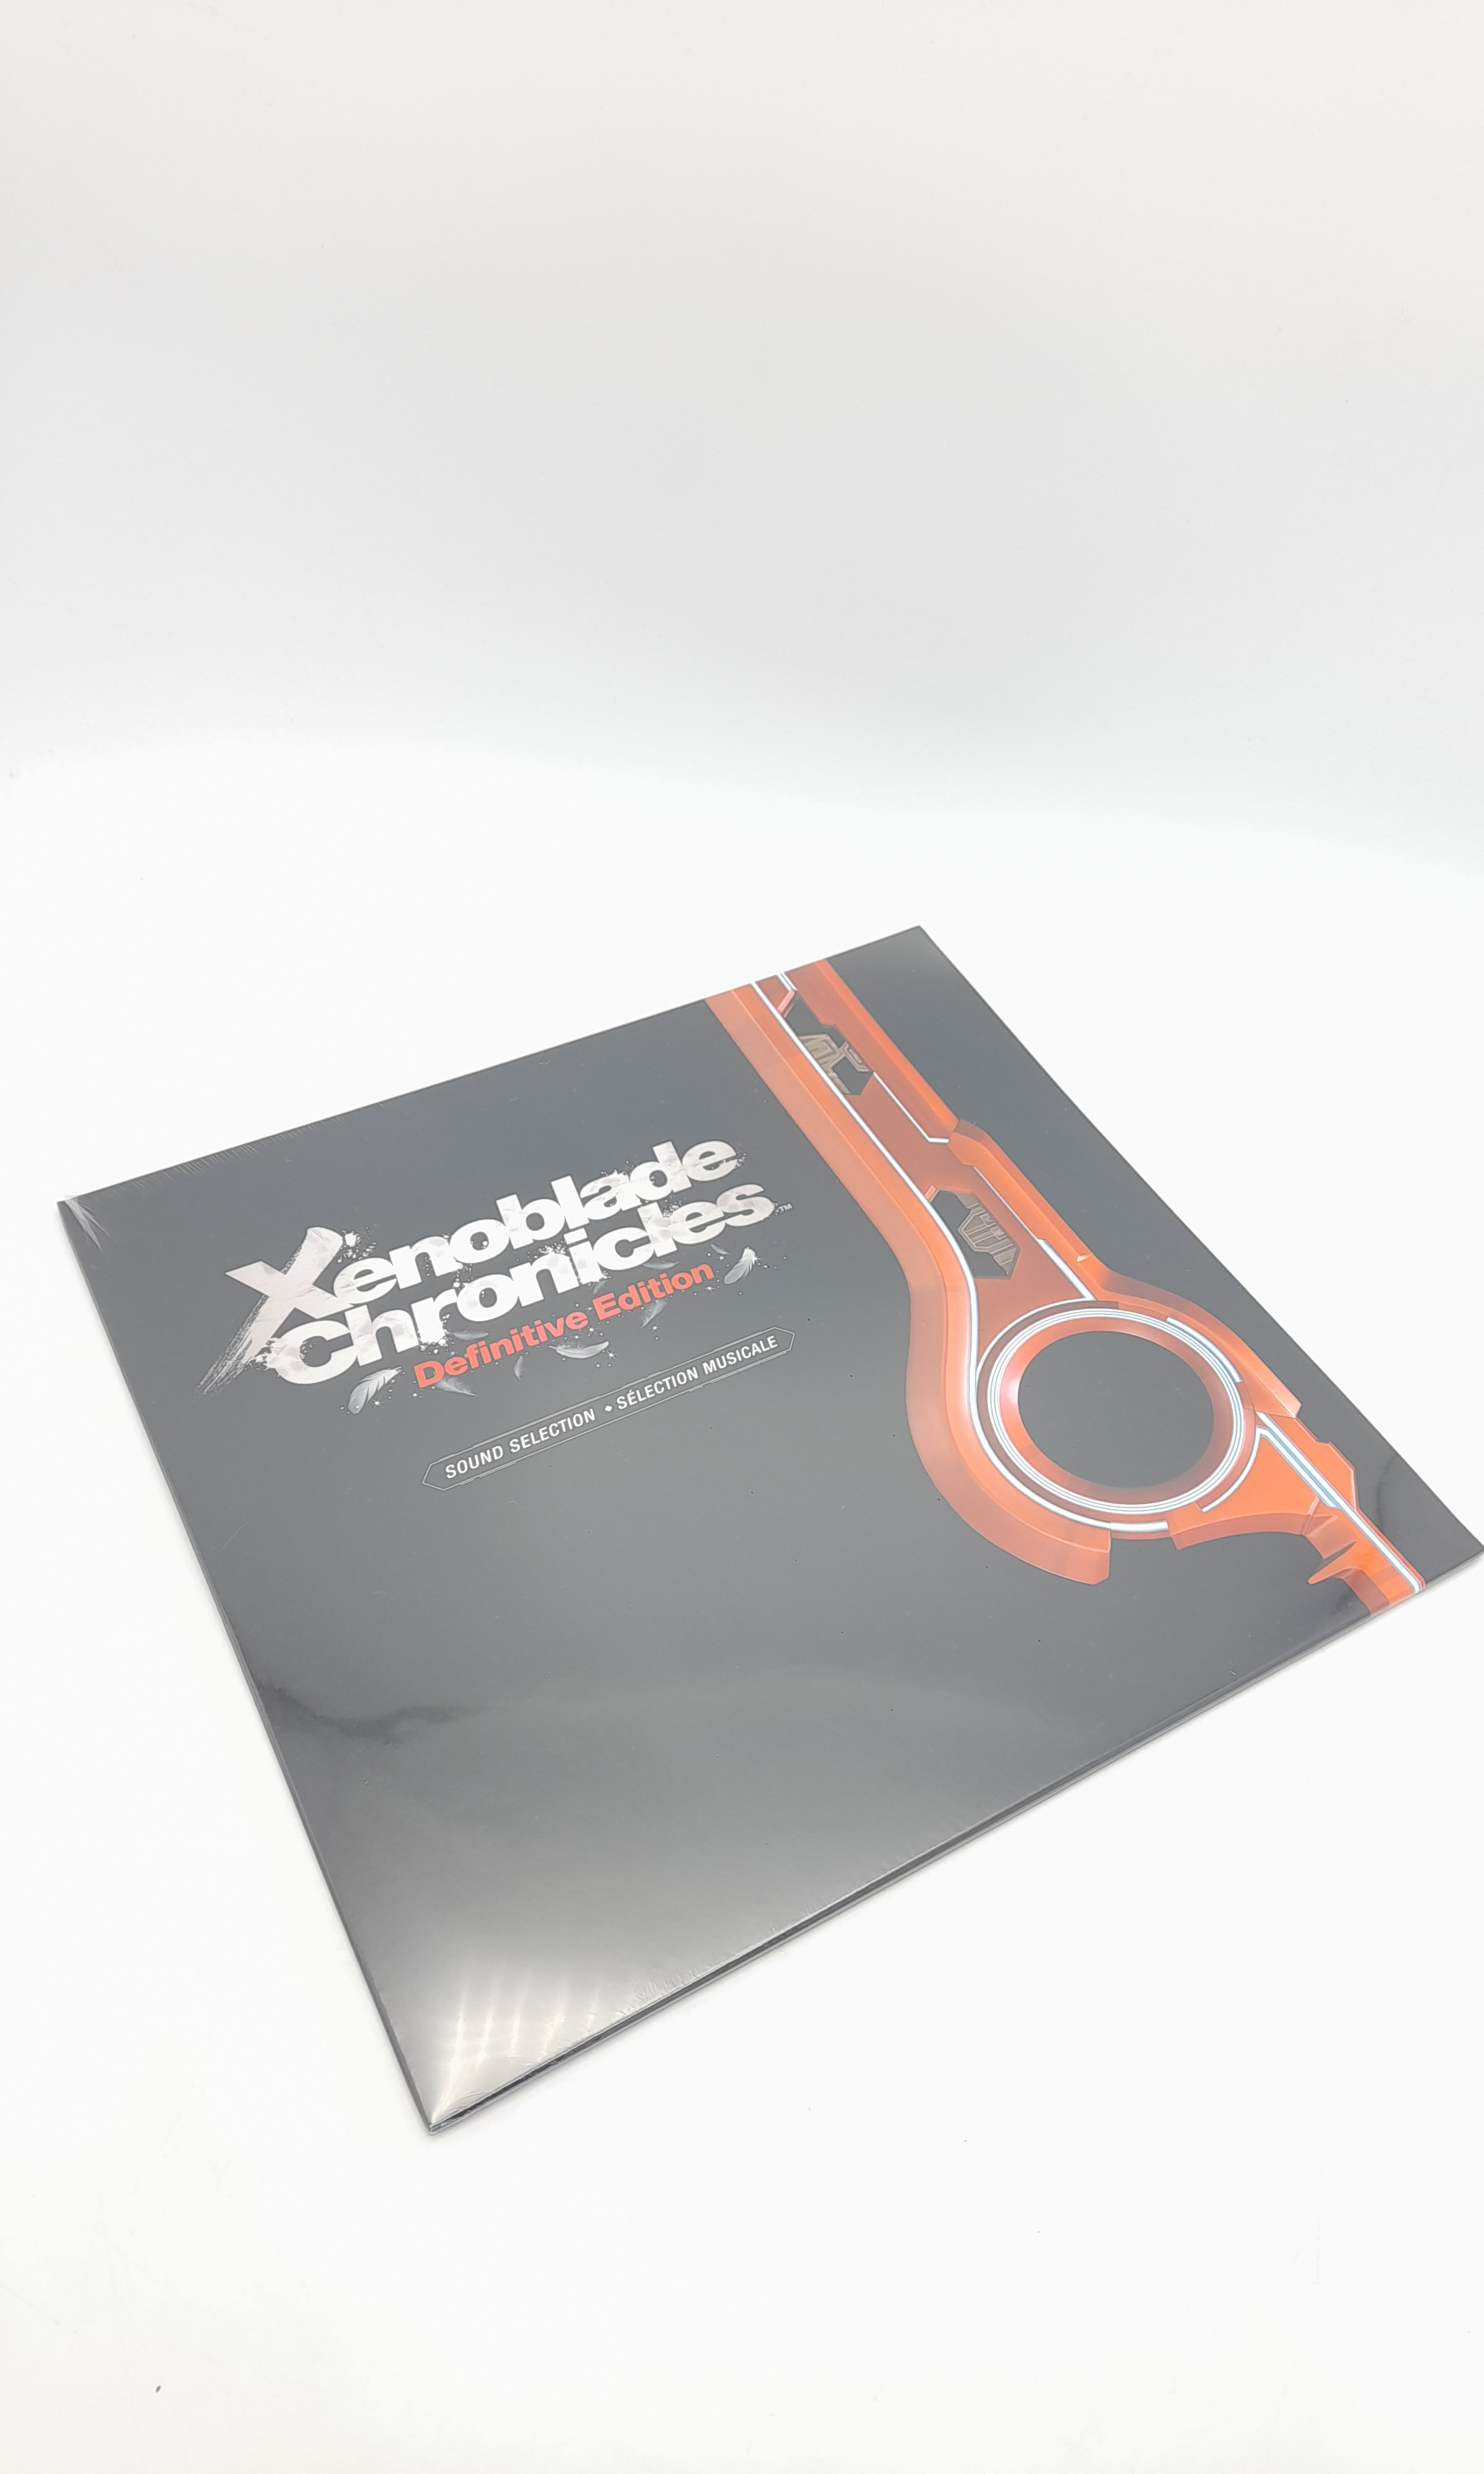 Foto van Xenoblade Chronicles Definitive Collector’s Edition in Doos